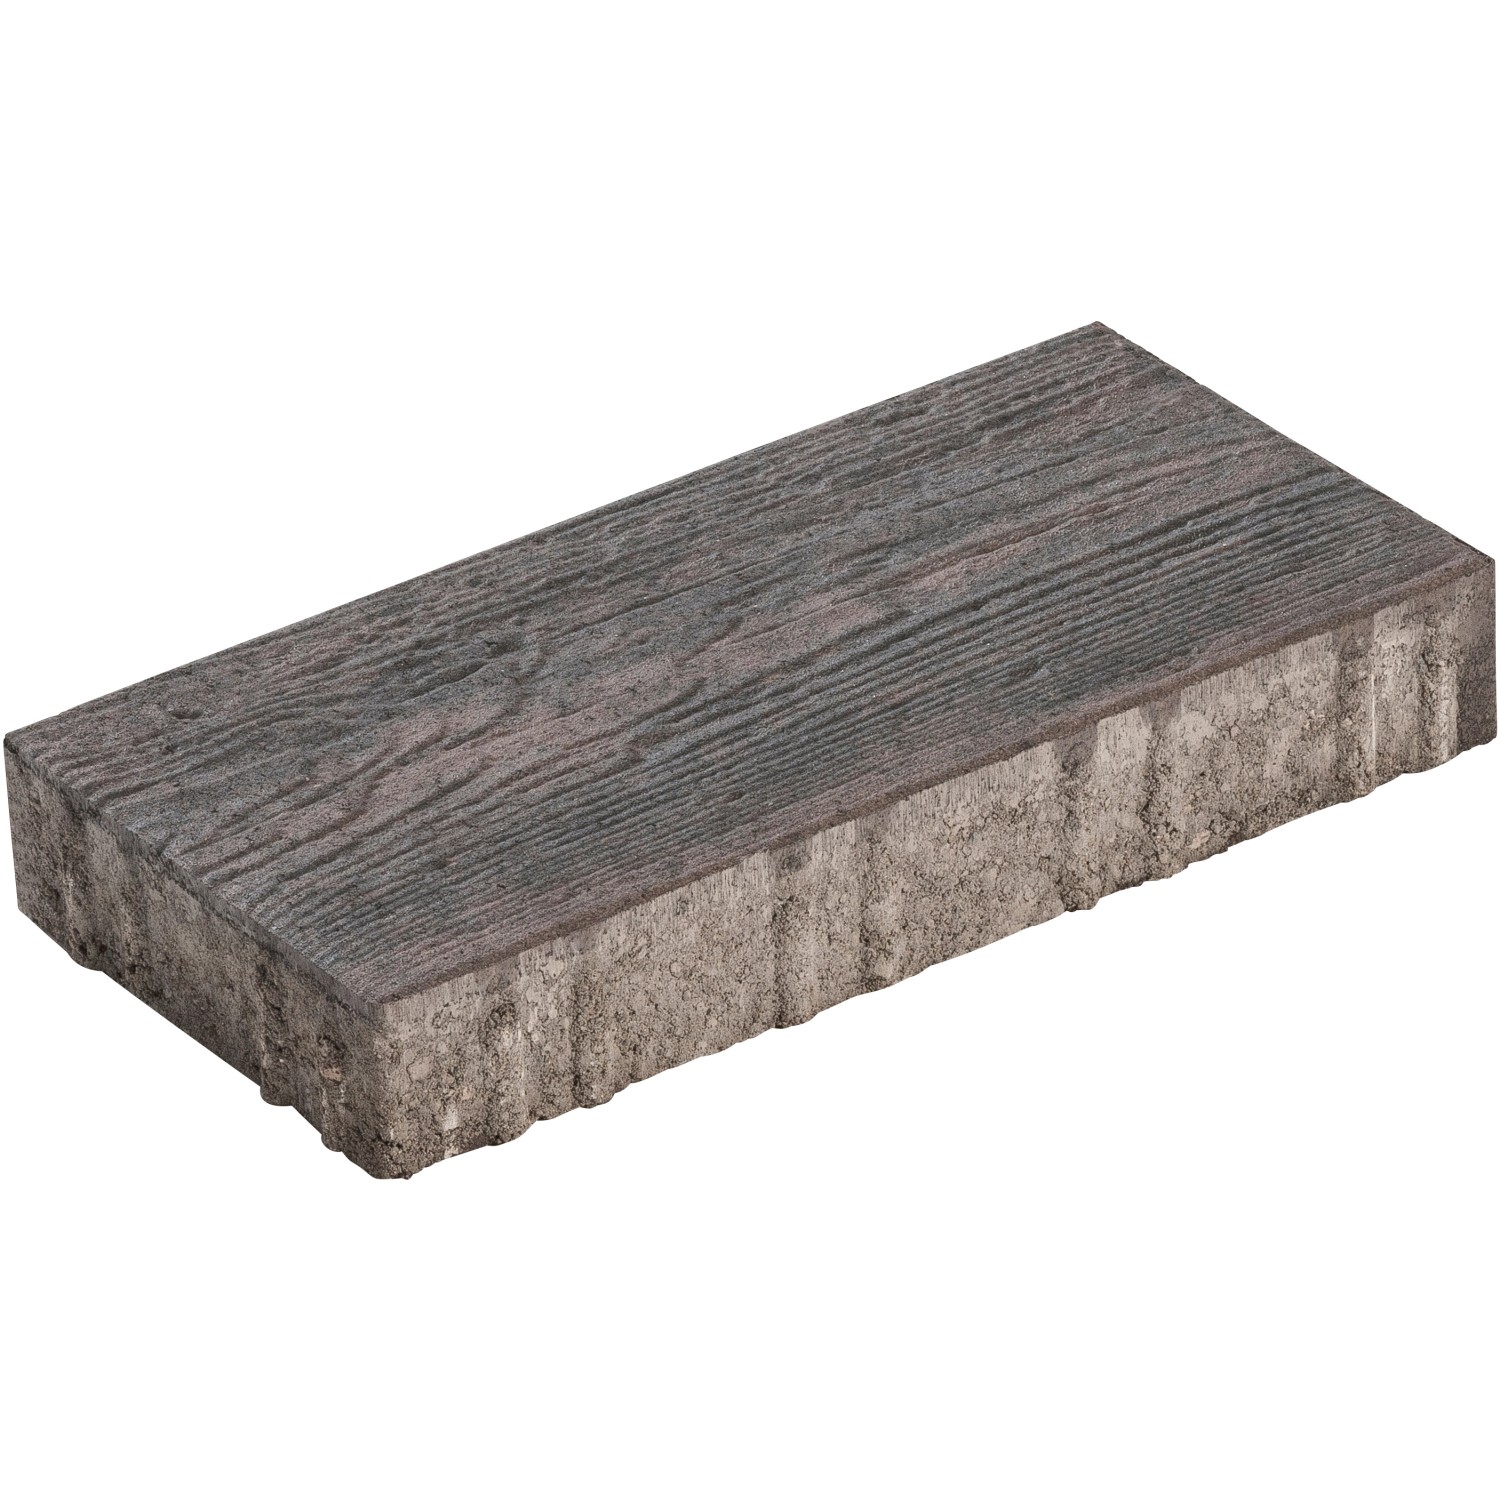 Diephaus Terrassenplatte Ruda Terra Holzstruktur 40 x 20 x 6 cm PE2